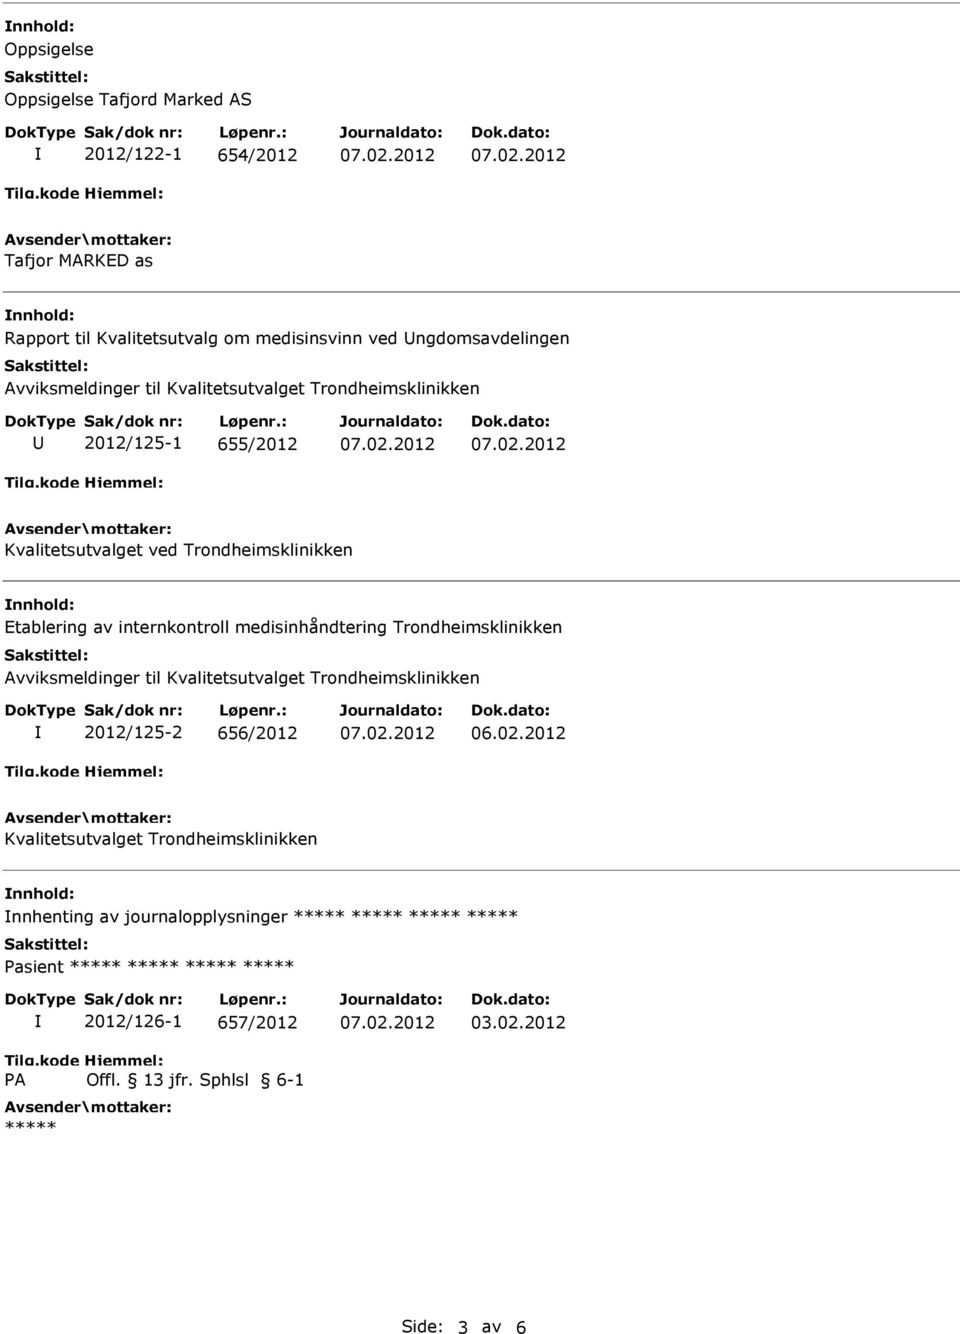 nnhold: Etablering av internkontroll medisinhåndtering Trondheimsklinikken Avviksmeldinger til Kvalitetsutvalget Trondheimsklinikken 2012/125-2